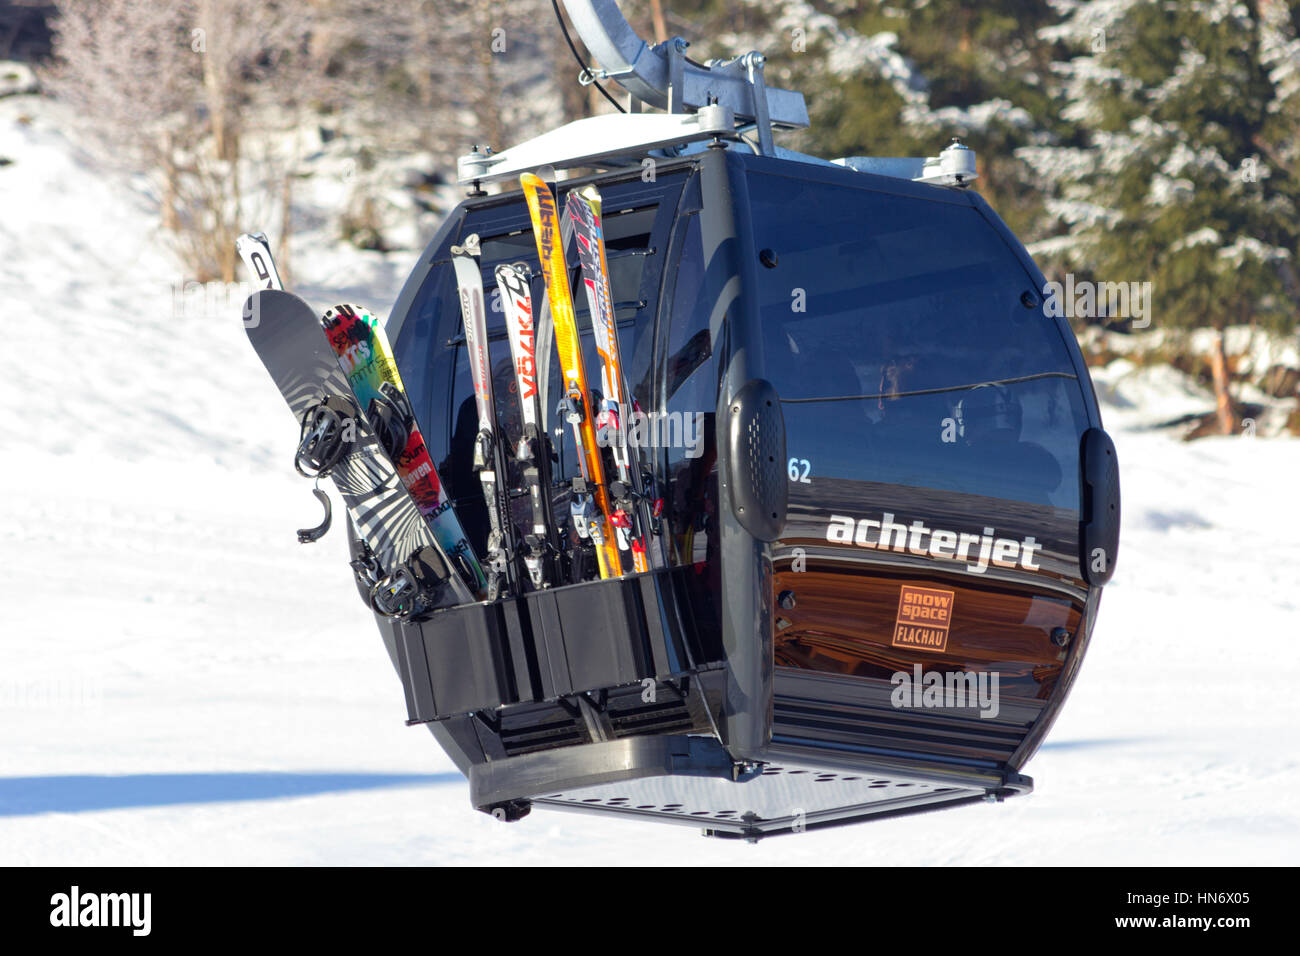 FLACHAU, Österreich - DEC 29: Skilift Kabel Stand der Piste in Flachau, Österreich am 29. Dezember 2012 steigen. Diese Pisten sind Bestandteil der Ski Armada Vernet Stockfoto